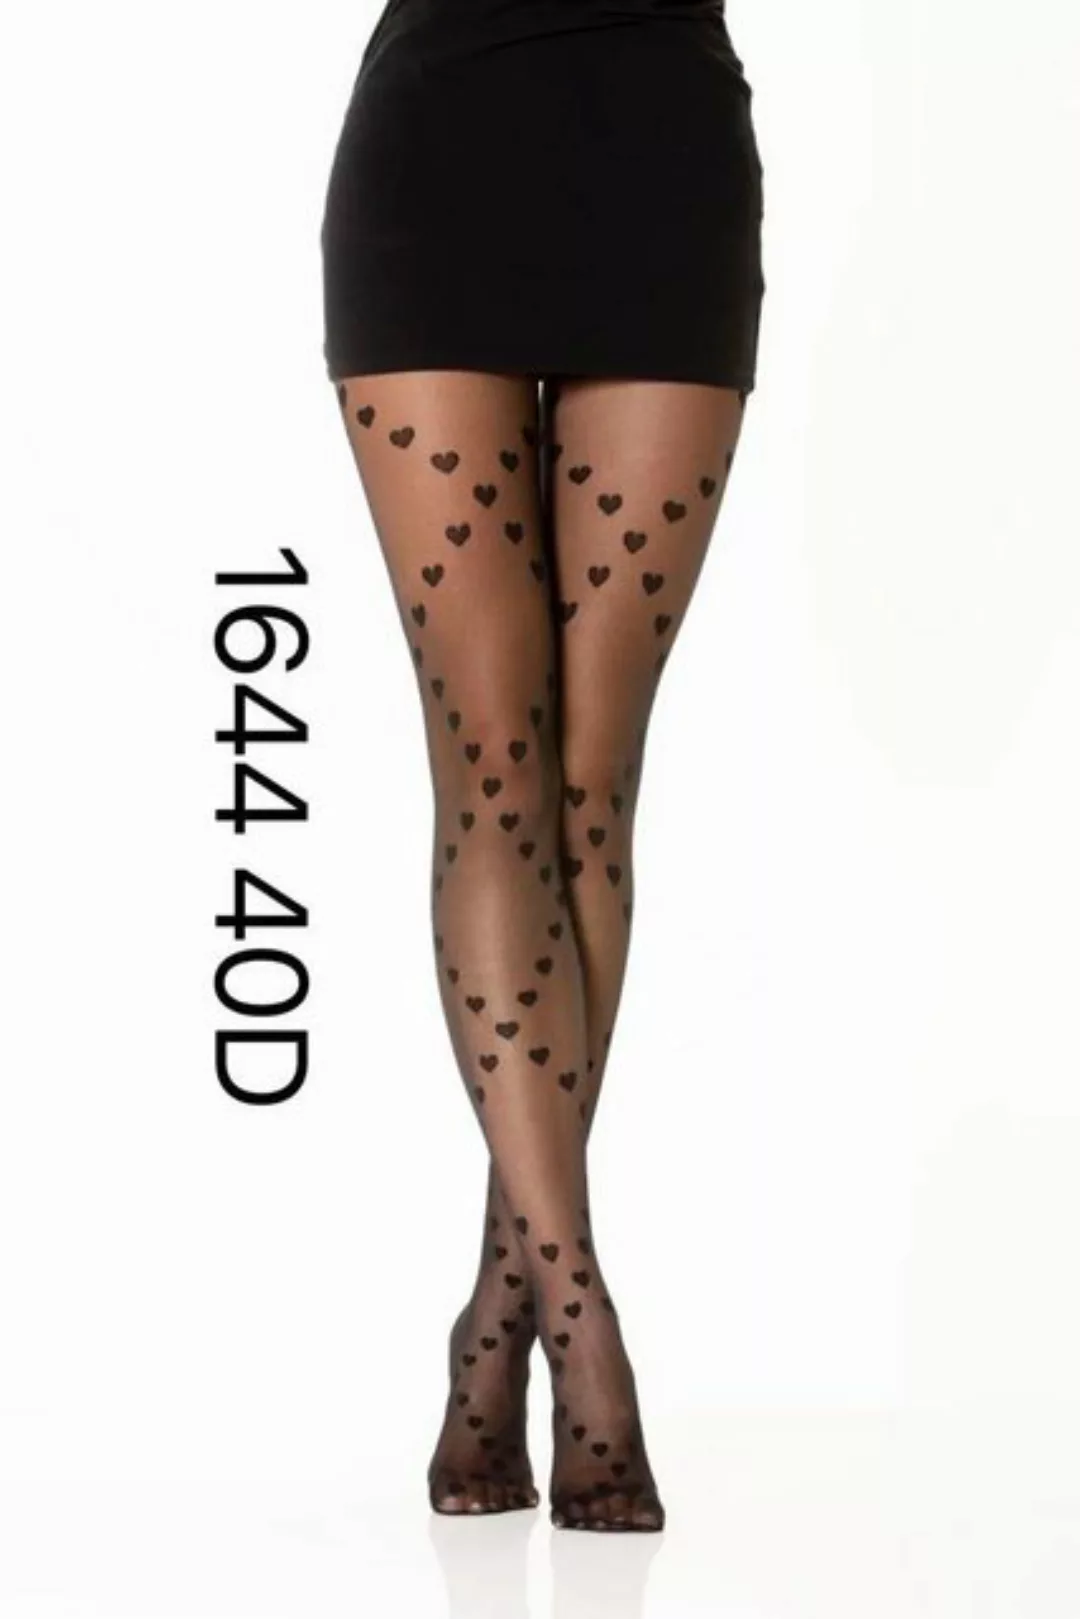 COFI 1453 Leggings Damen Strumpfhose Muster Optik 40 DEN für Frauen Collant günstig online kaufen